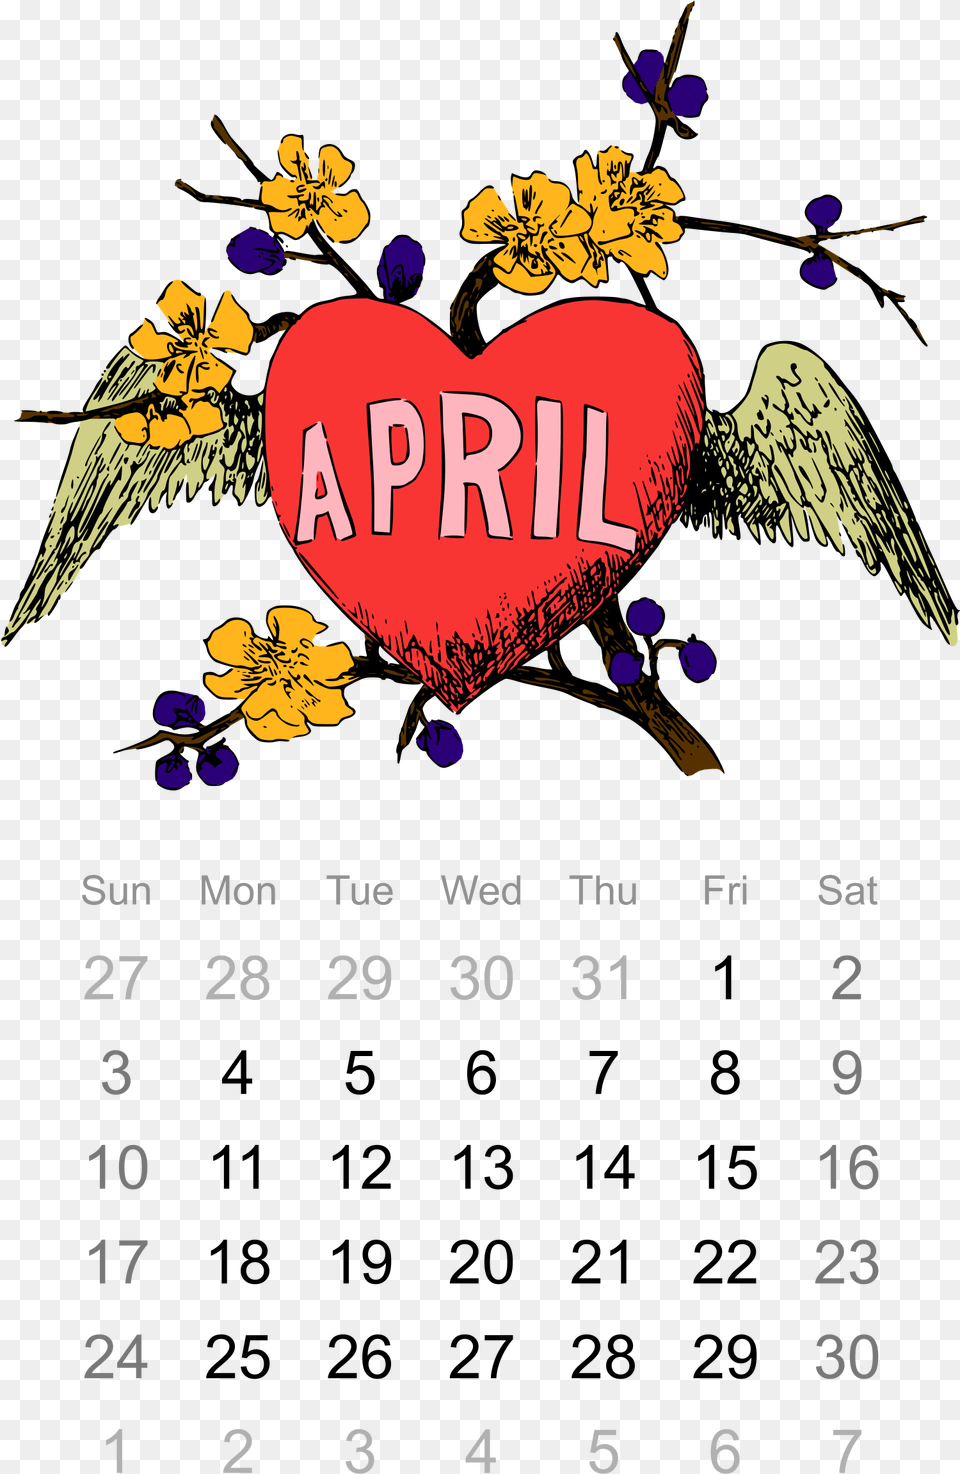 April Images Clipart Desktop Backgrounds April Calendar Text, Animal, Bird, Symbol Free Transparent Png